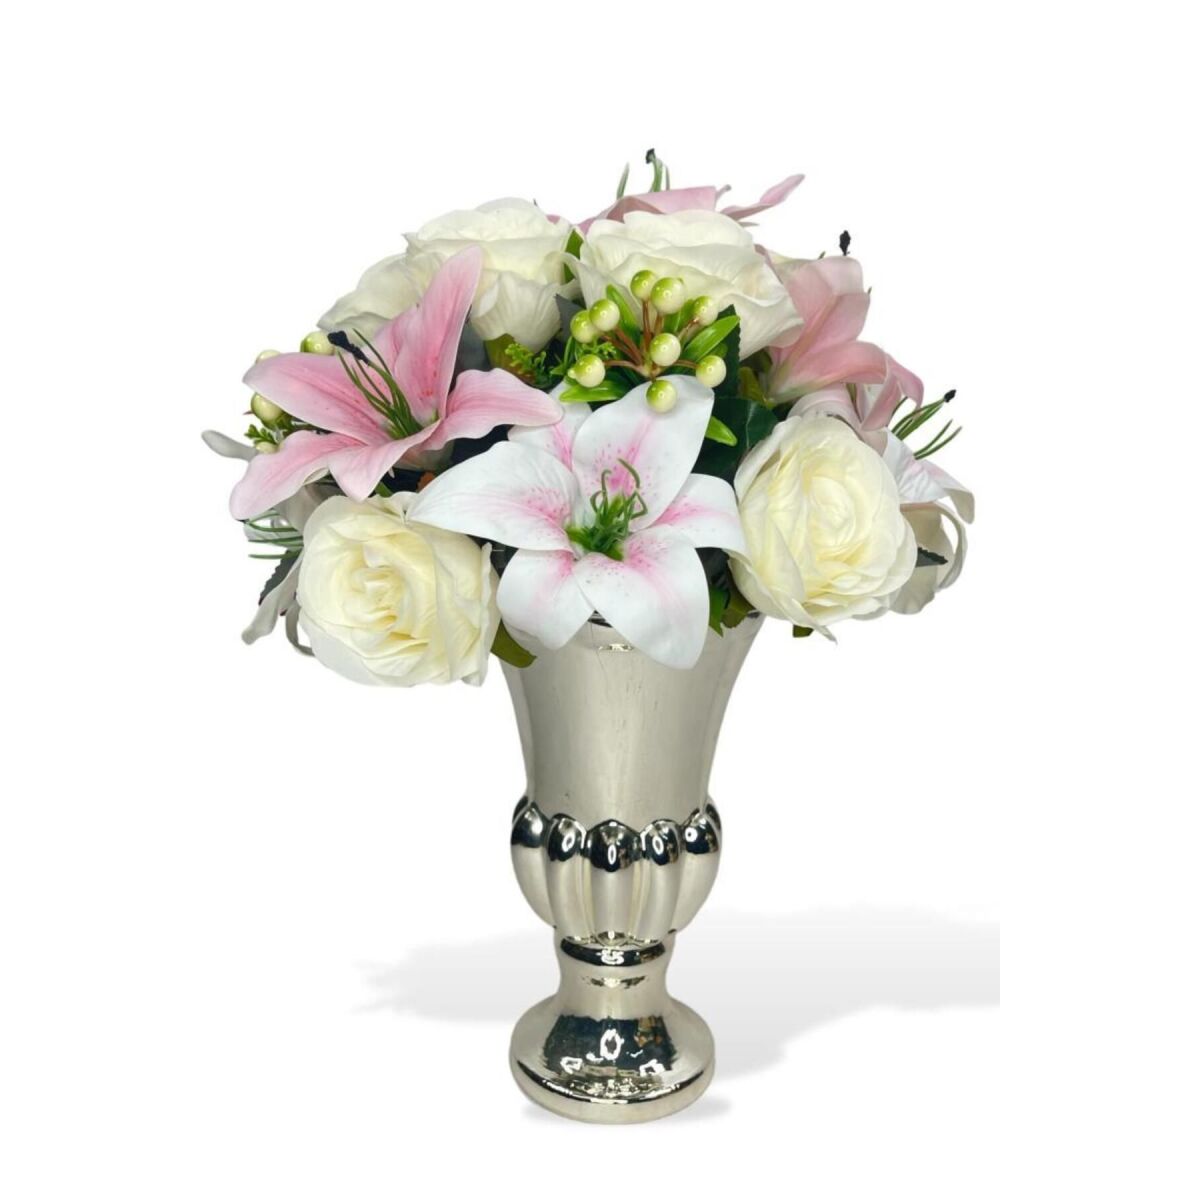 Yapay Çiçek Aranjmanı Pembe Lilyum Ve Güllü Gümüş Cam Kupa Vazoda Nişan Çiçeği İsteme Çiçeği